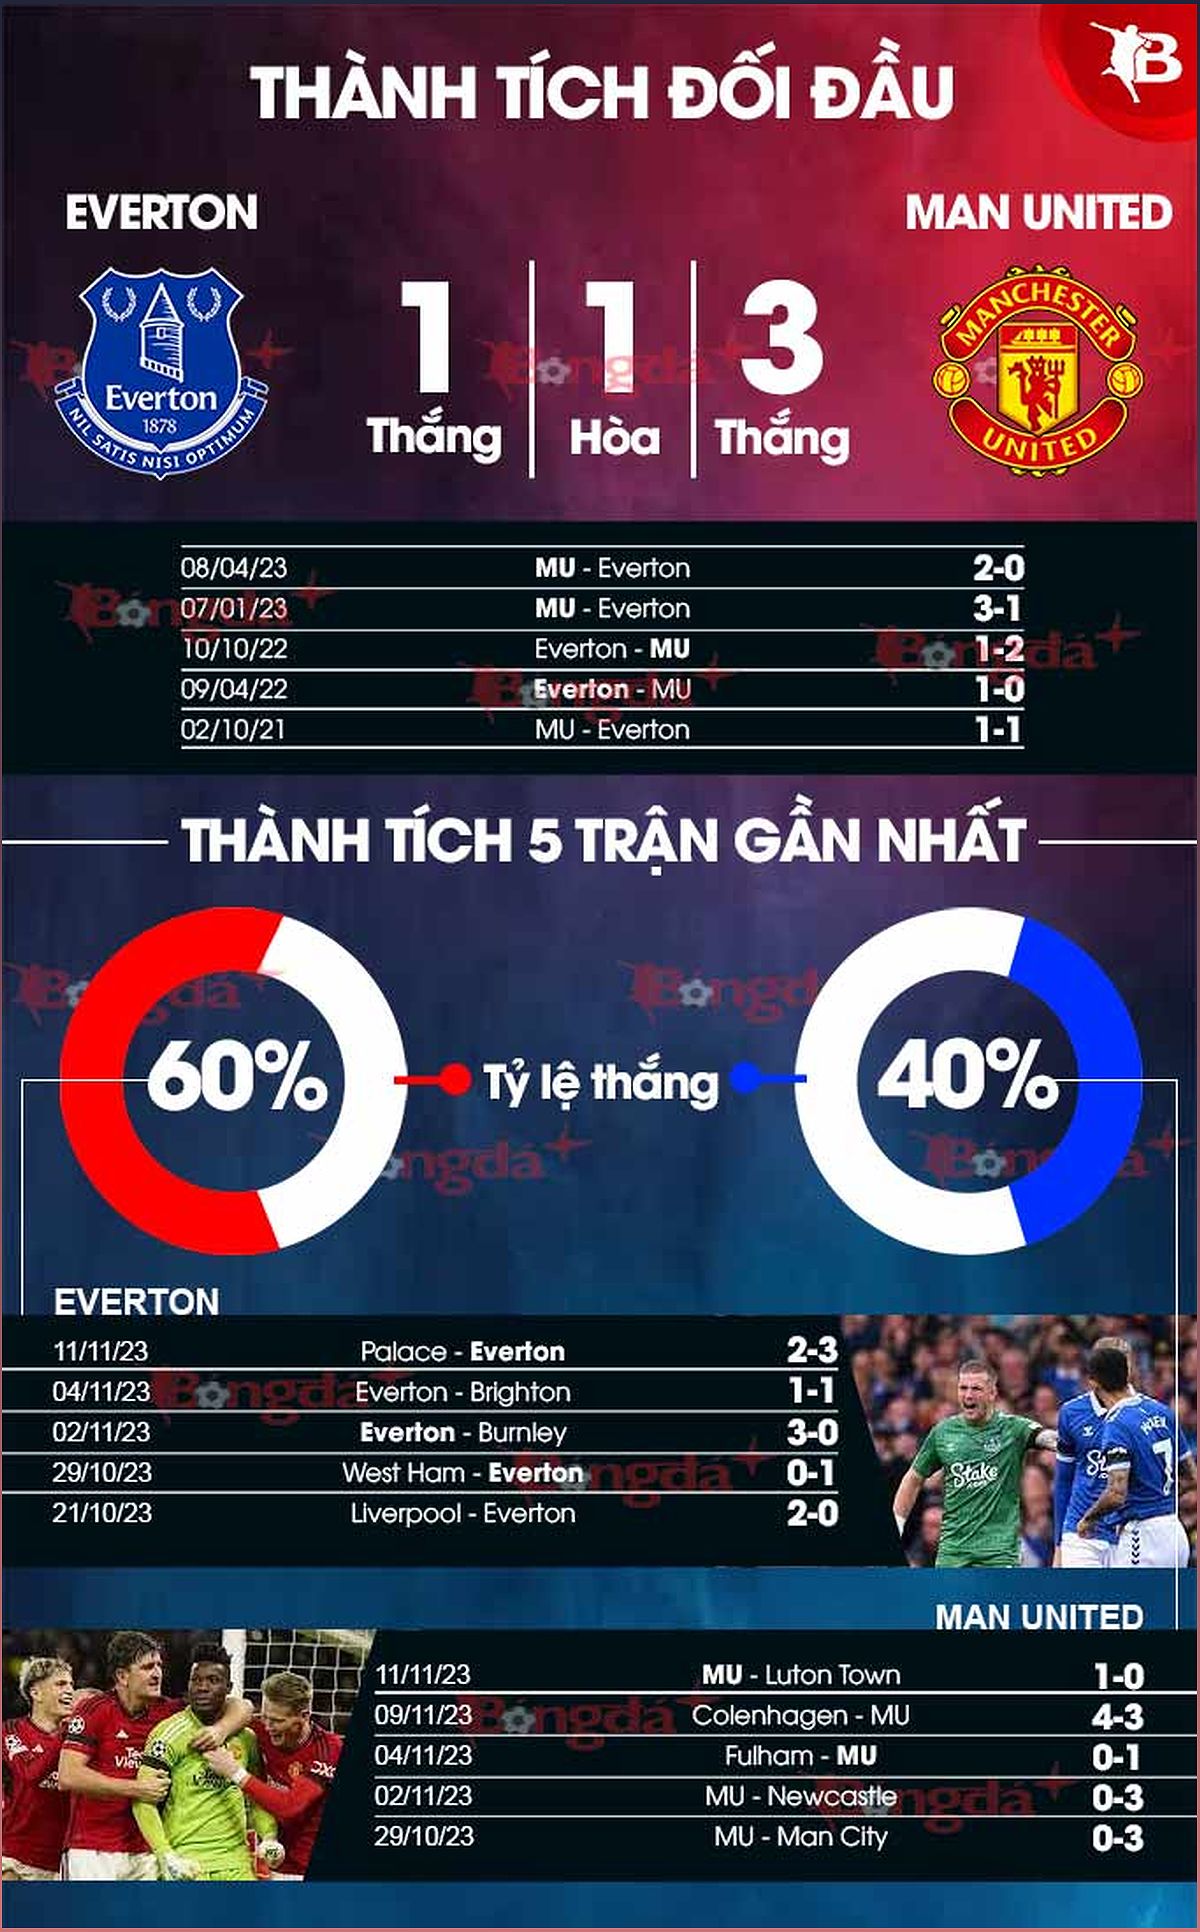 Nhận định trận Everton vs MU: Dự đoán tỉ số và phân tích trận đấu - 1816404233